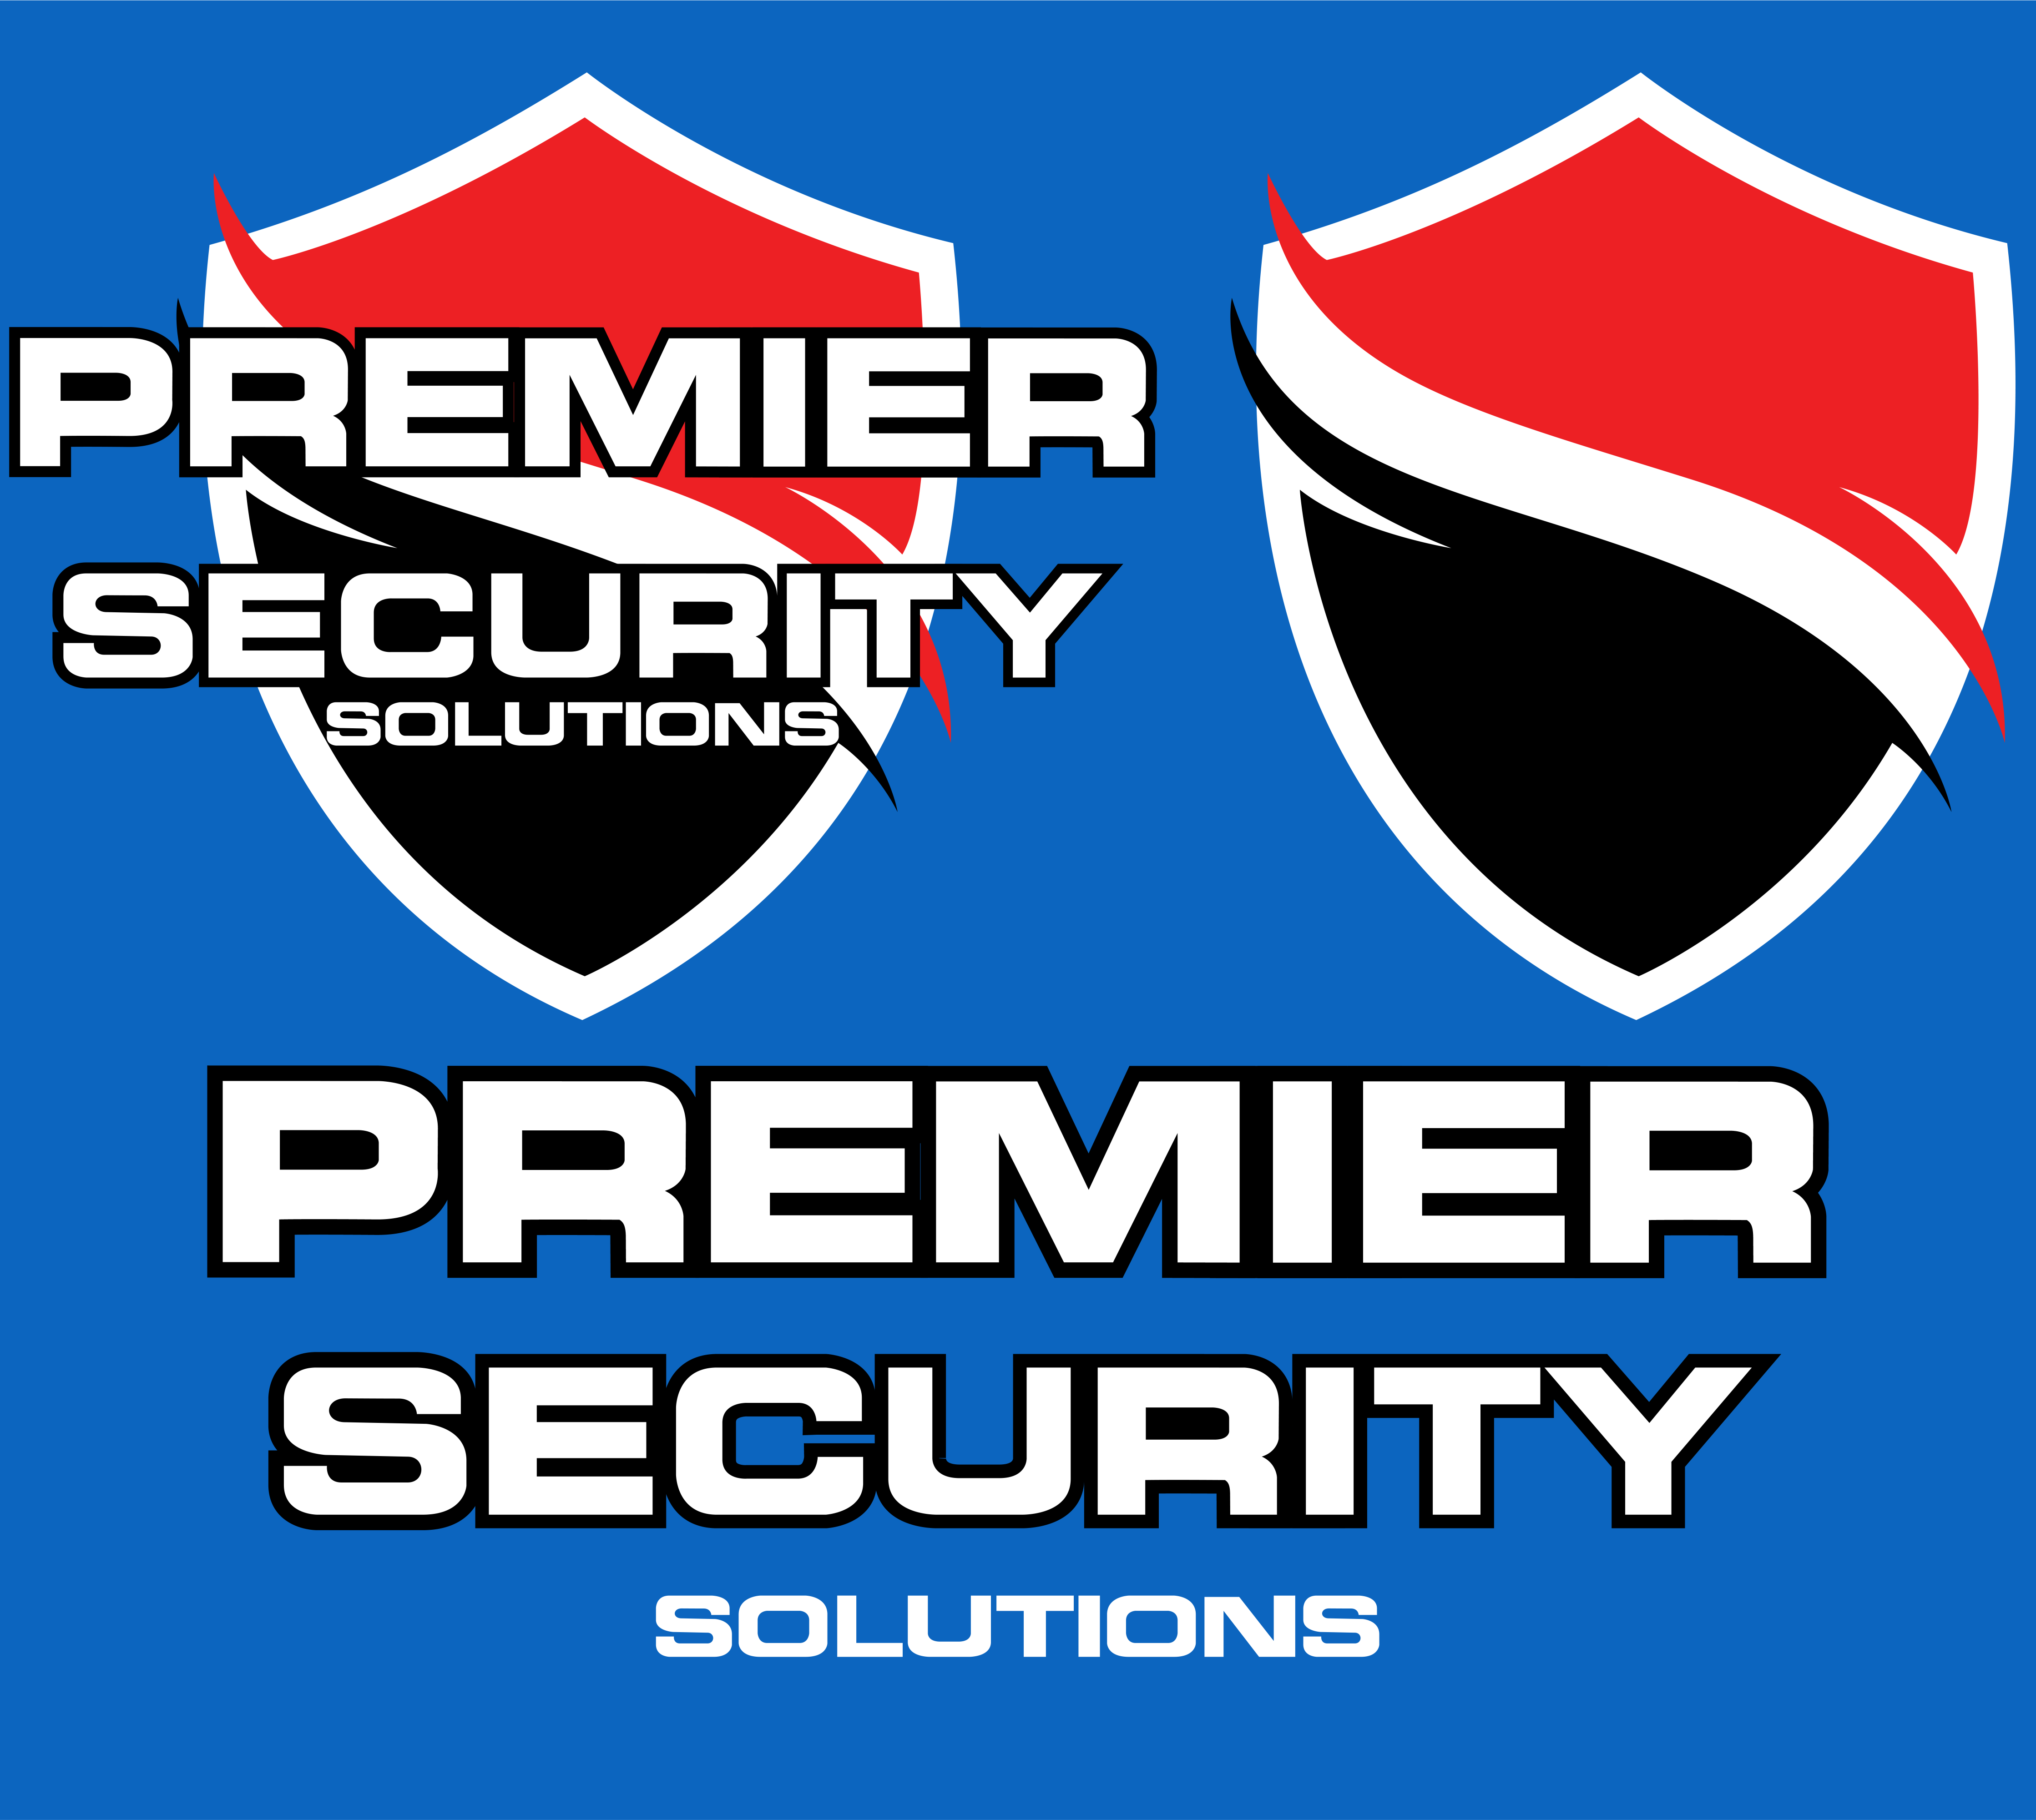 Premier Security Logoset.png